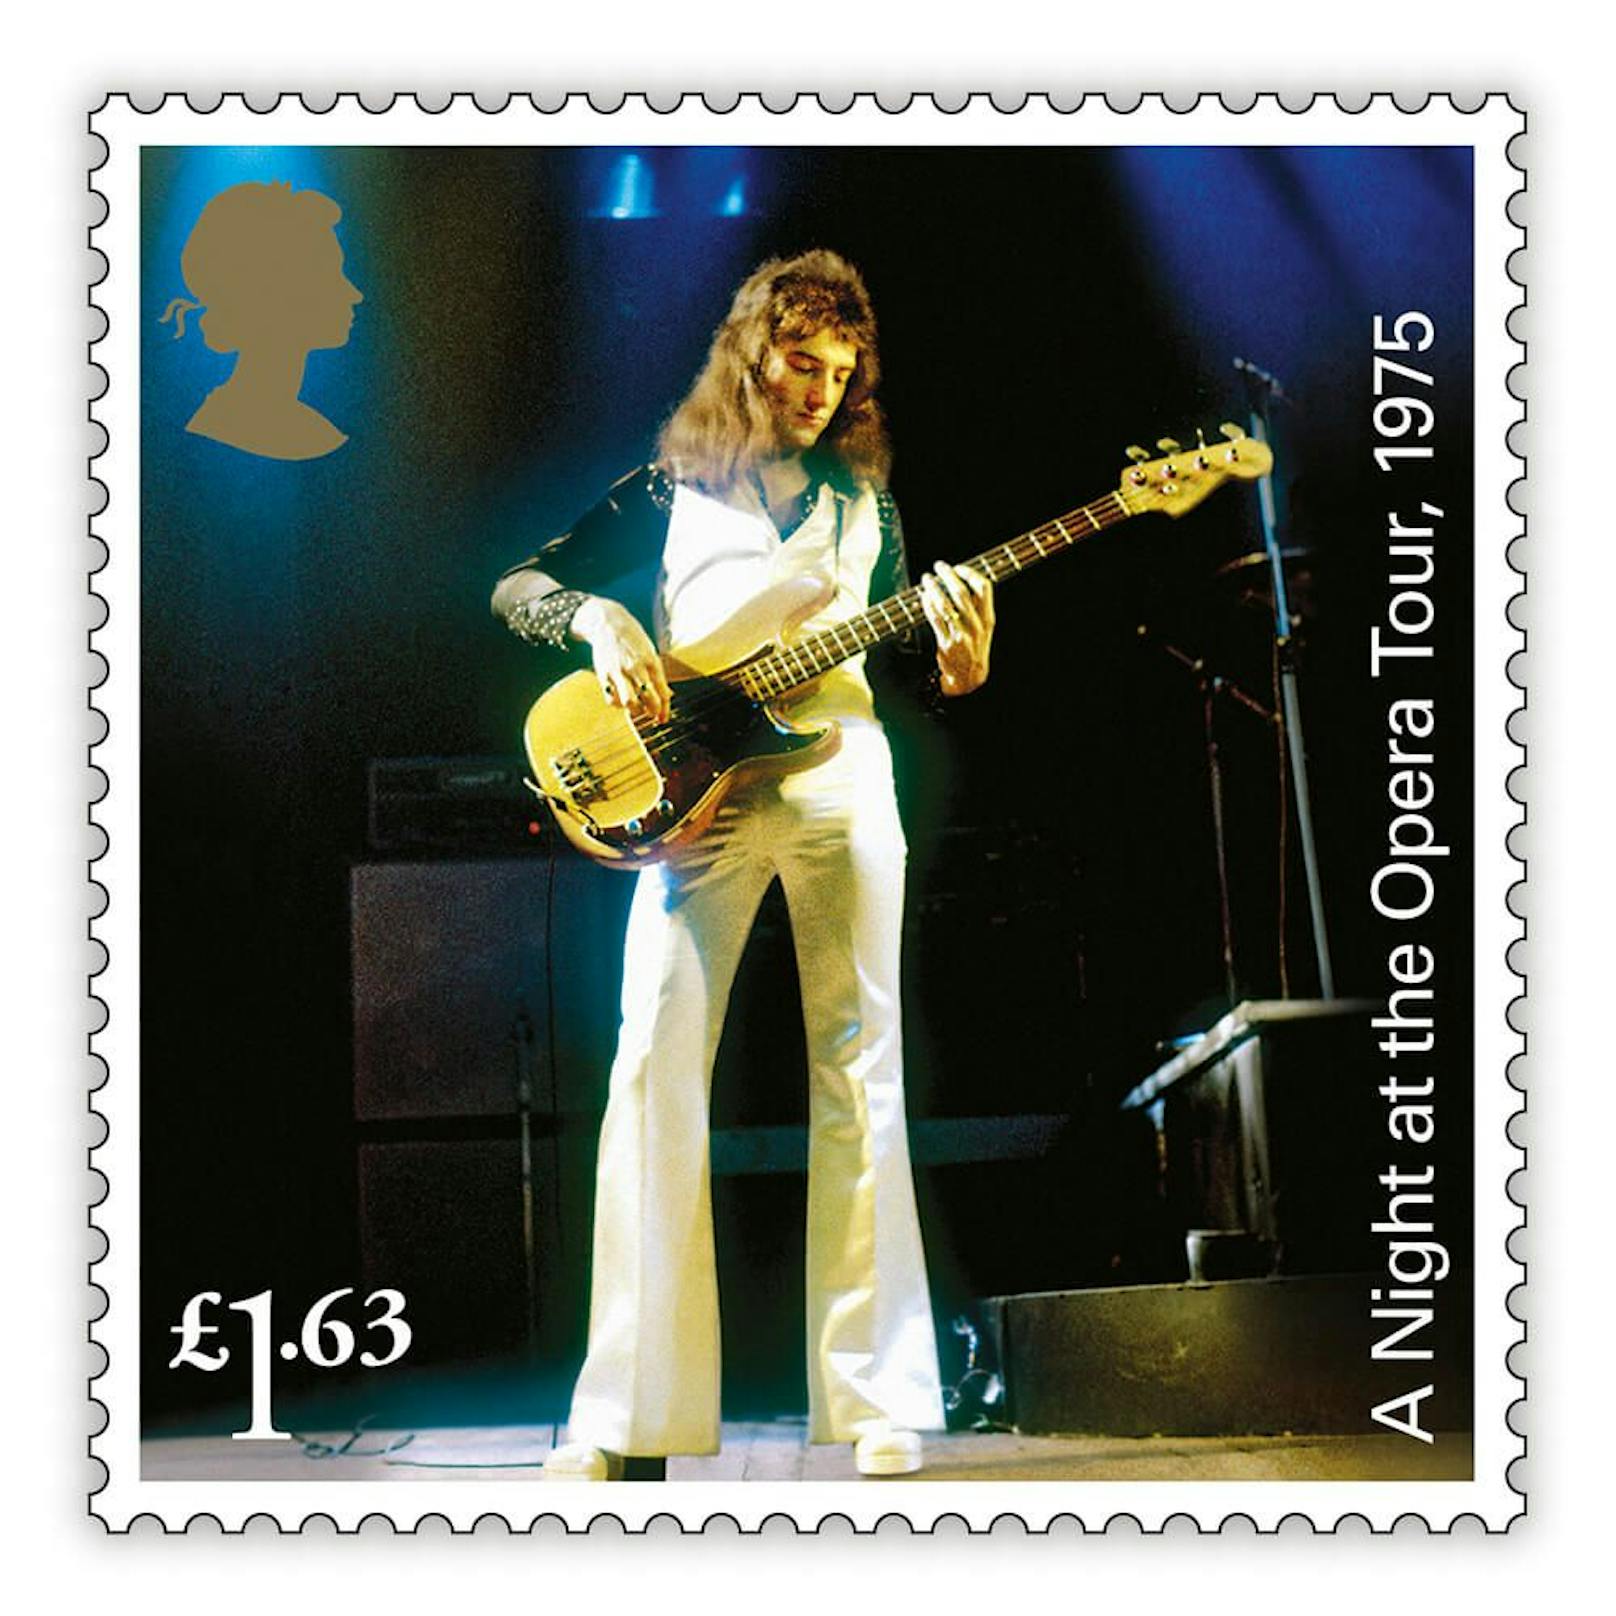 Queen-Musiker <strong>John Deacon</strong> erhält seine eigene Porträt-Marke.